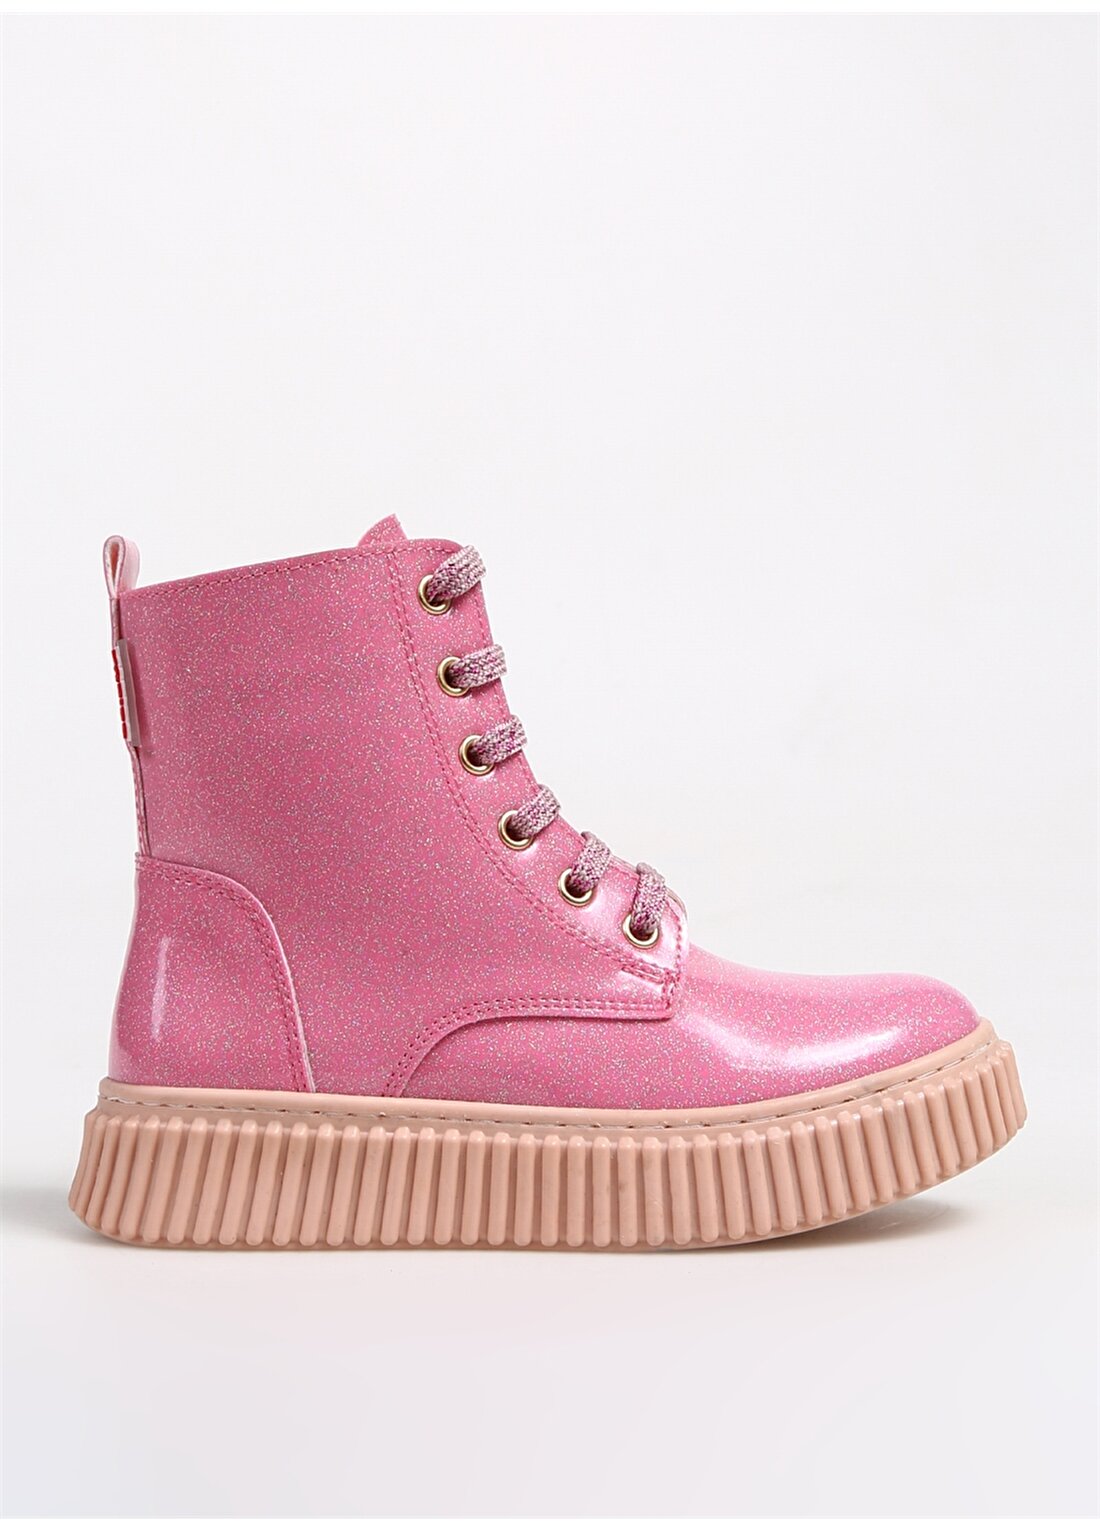 Haribo Pembe Kız Çocuk Bot Shiny Bear Boots HRBFTW660 Pink